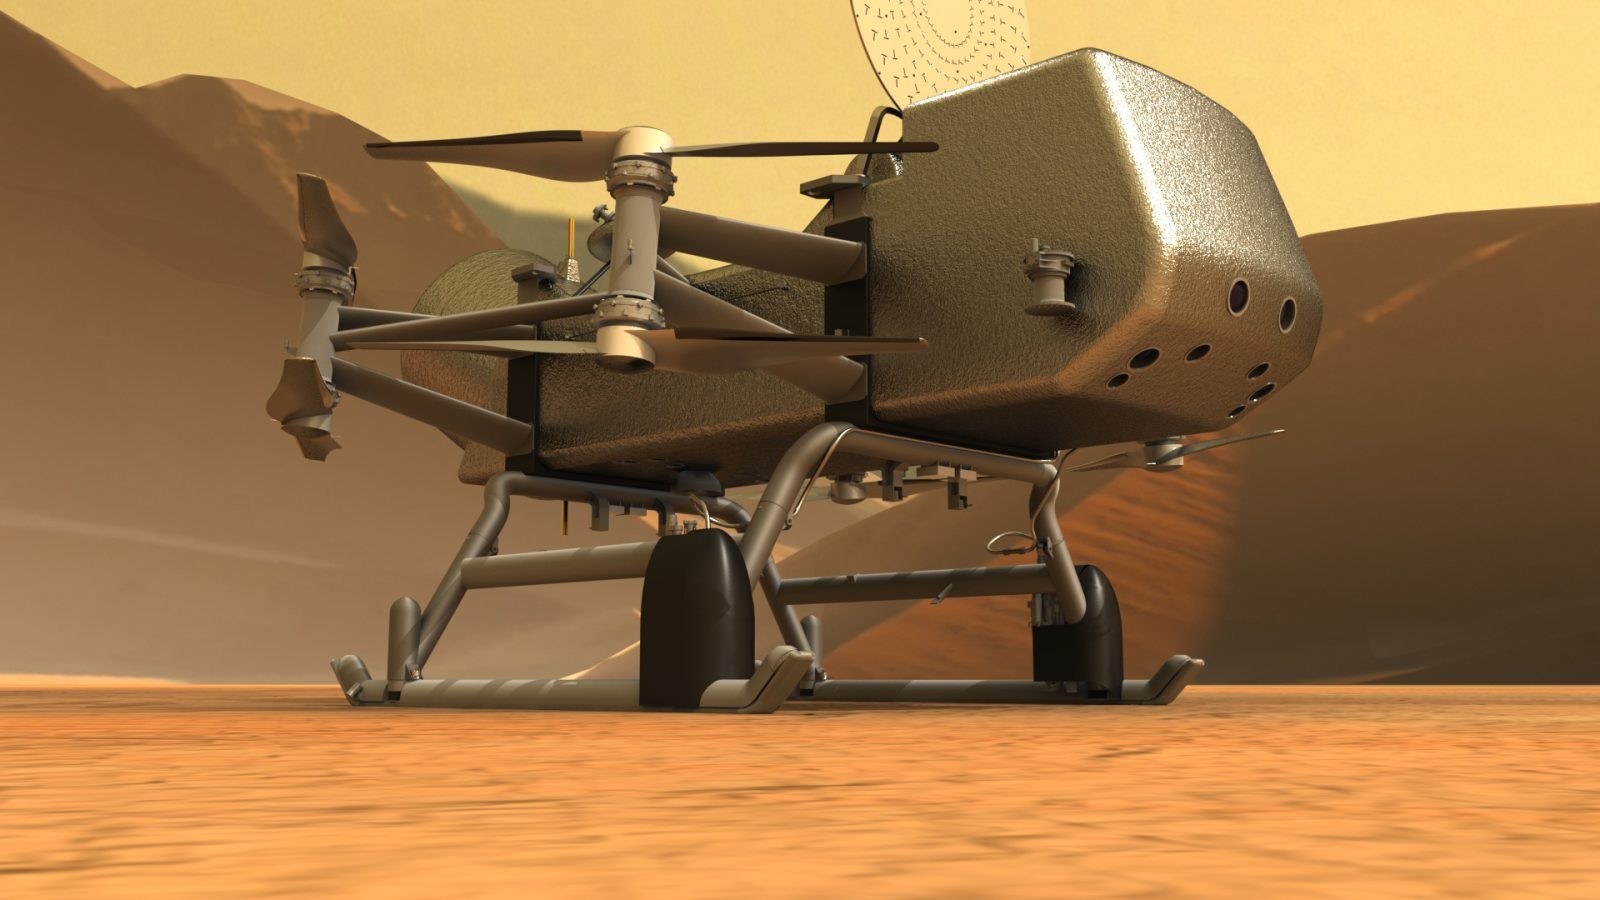 Ważka nad Tytanem. NASA szykuje misję Dragonfly